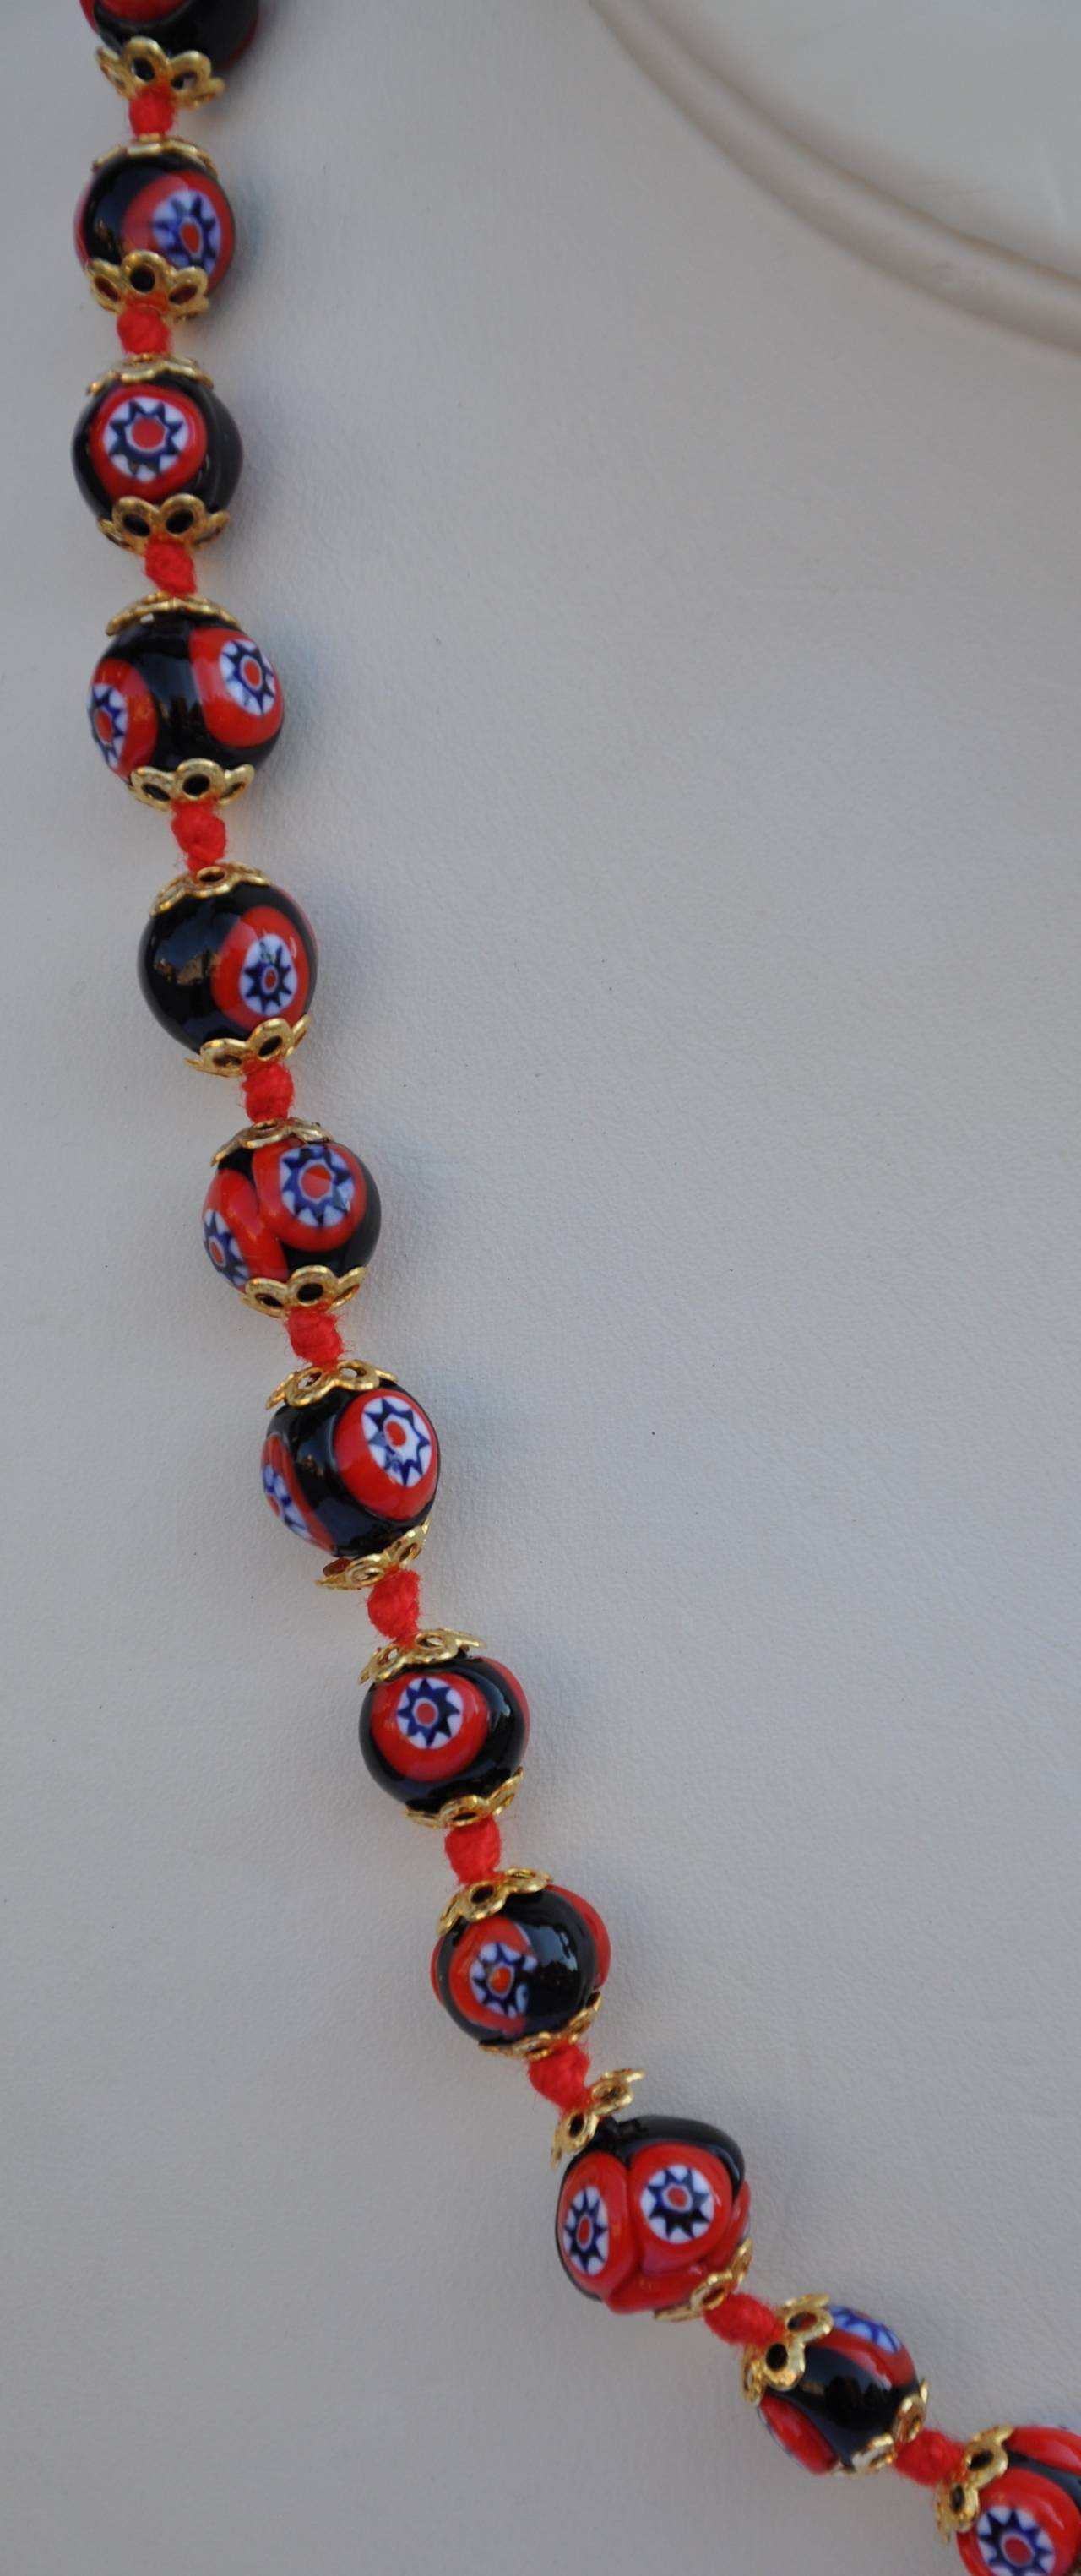 Multi-Farben gemischt mit navy, rot und weiß in jedem Glas geschnitzt Perlen macht für eine schöne Halskette. Die Halskette misst 19